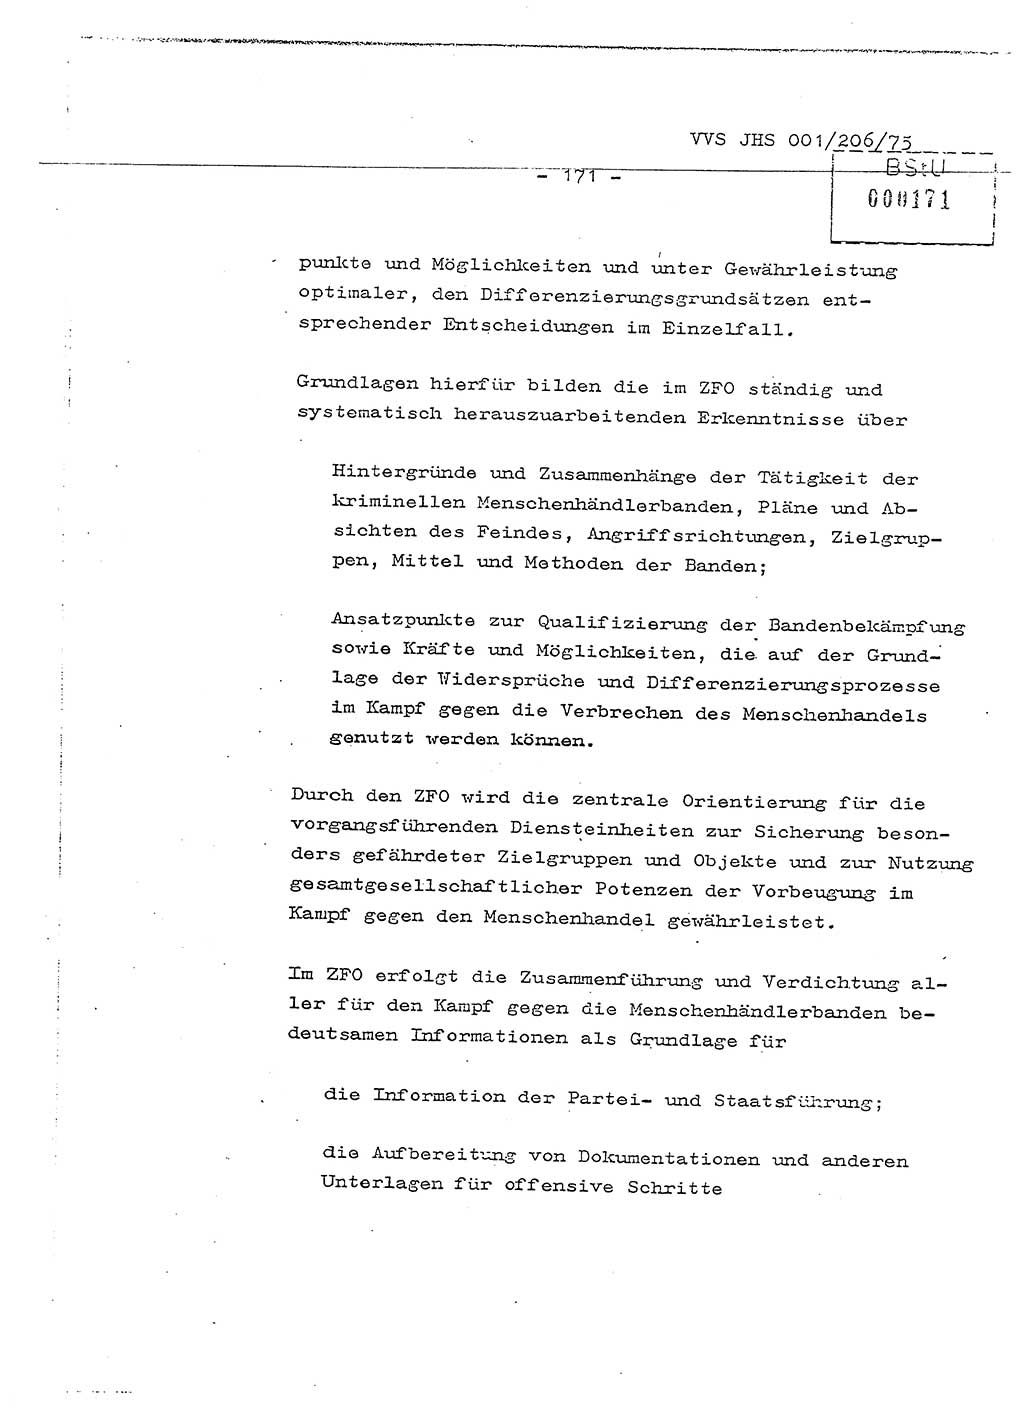 Dissertation Generalmajor Manfred Hummitzsch (Leiter der BV Leipzig), Generalmajor Heinz Fiedler (HA Ⅵ), Oberst Rolf Fister (HA Ⅸ), Ministerium für Staatssicherheit (MfS) [Deutsche Demokratische Republik (DDR)], Juristische Hochschule (JHS), Vertrauliche Verschlußsache (VVS) 001-206/75, Potsdam 1975, Seite 171 (Diss. MfS DDR JHS VVS 001-206/75 1975, S. 171)